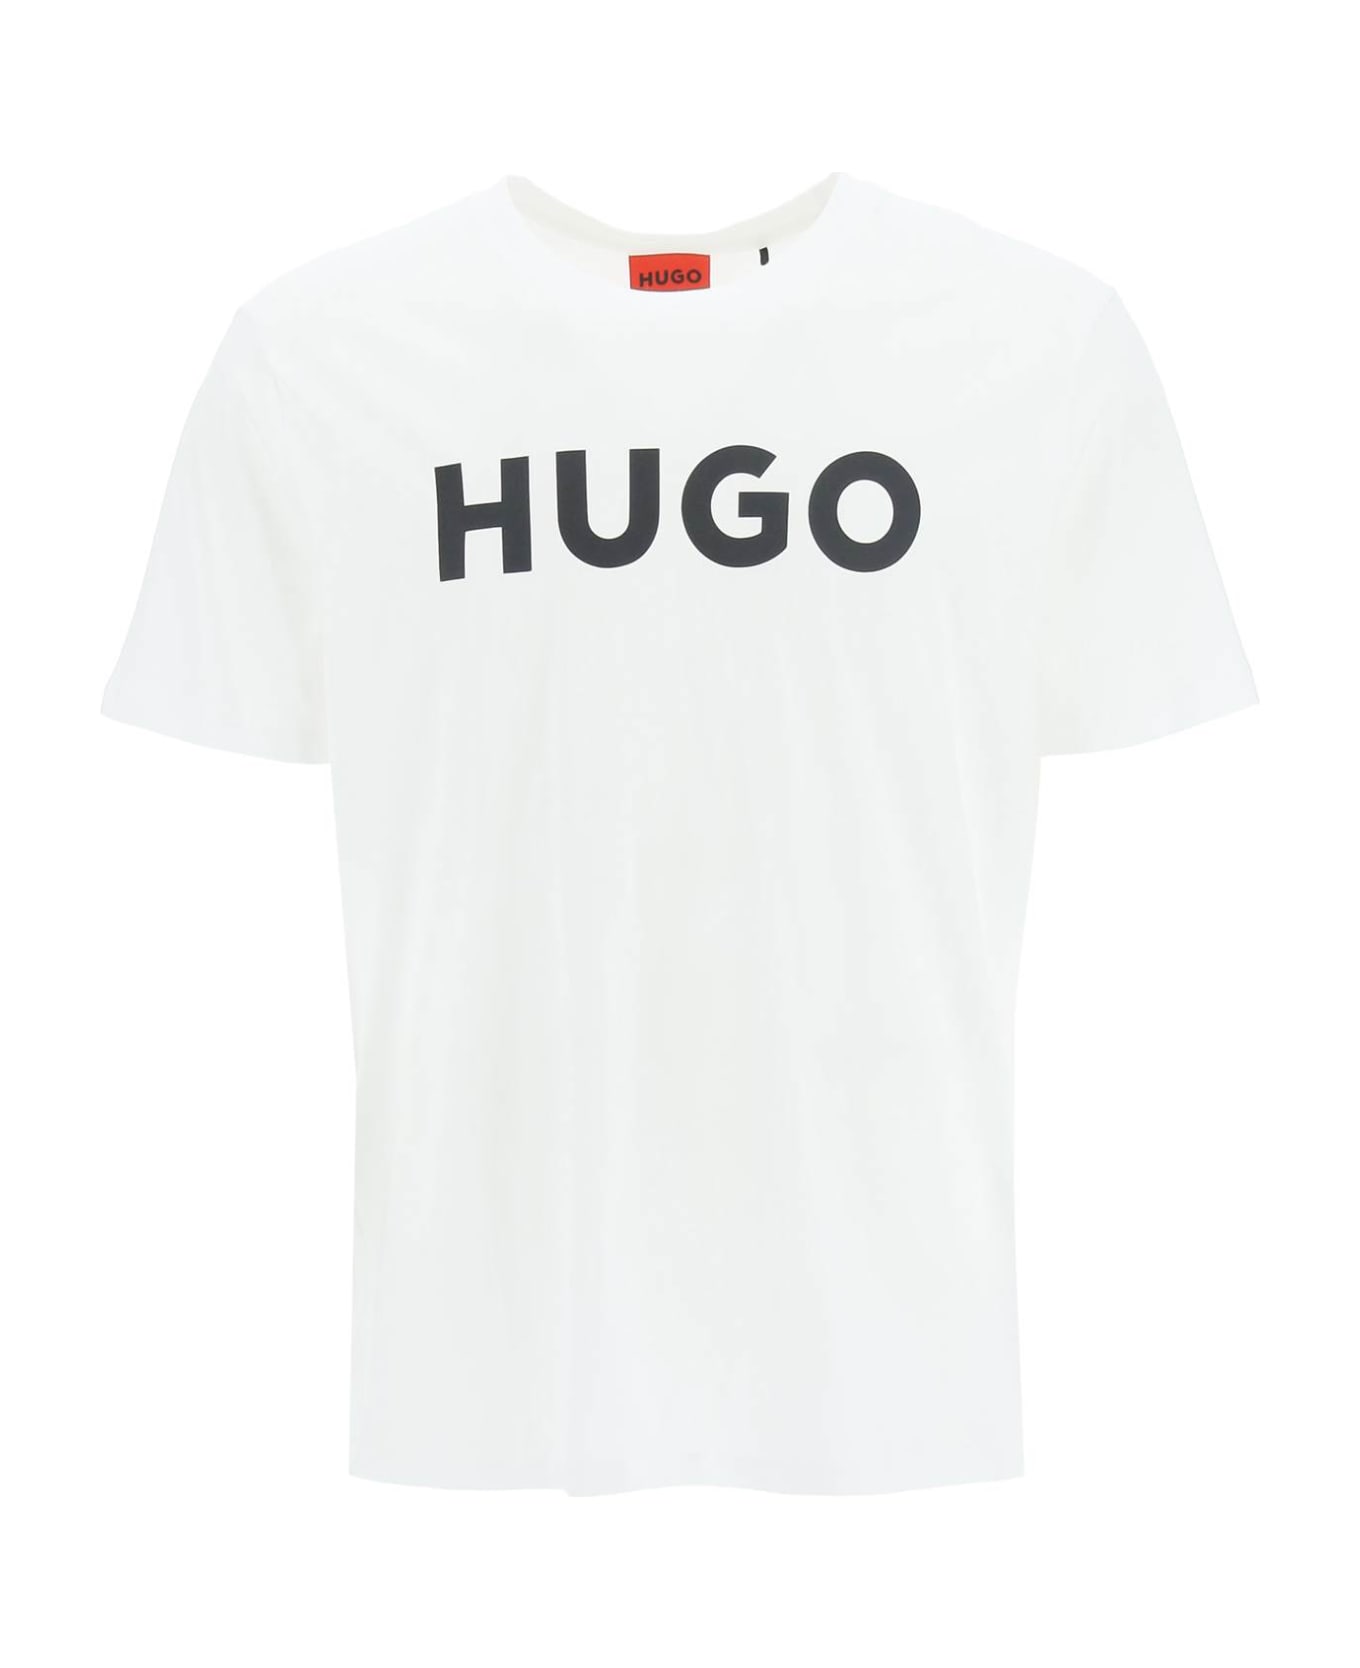 Hugo Boss Dulivio Logo T-shirt - OPEN WHITE (White)